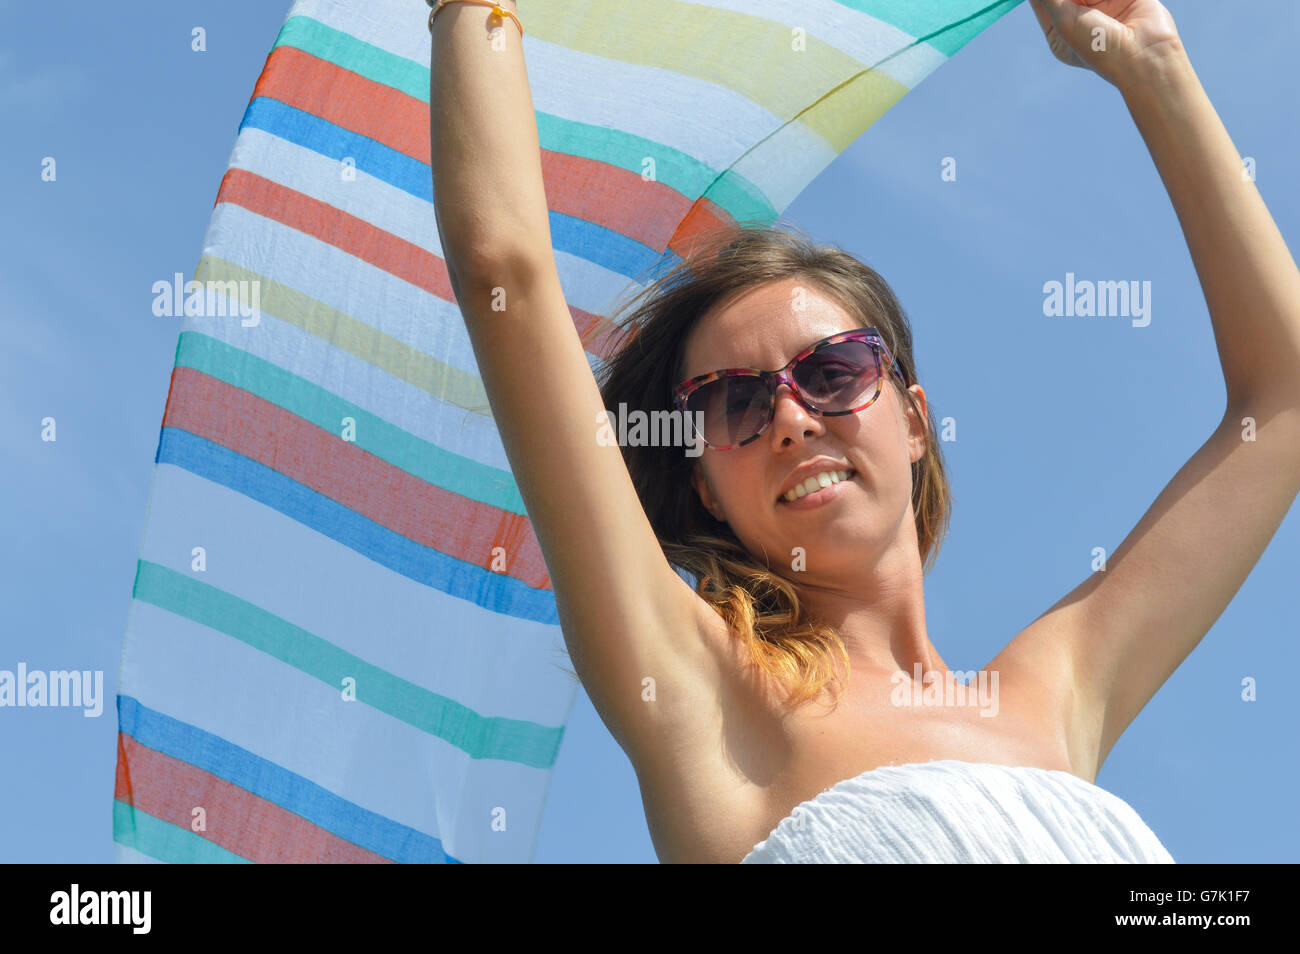 Chica agitando una colorida bufanda en seaside contra el cielo azul Foto de stock